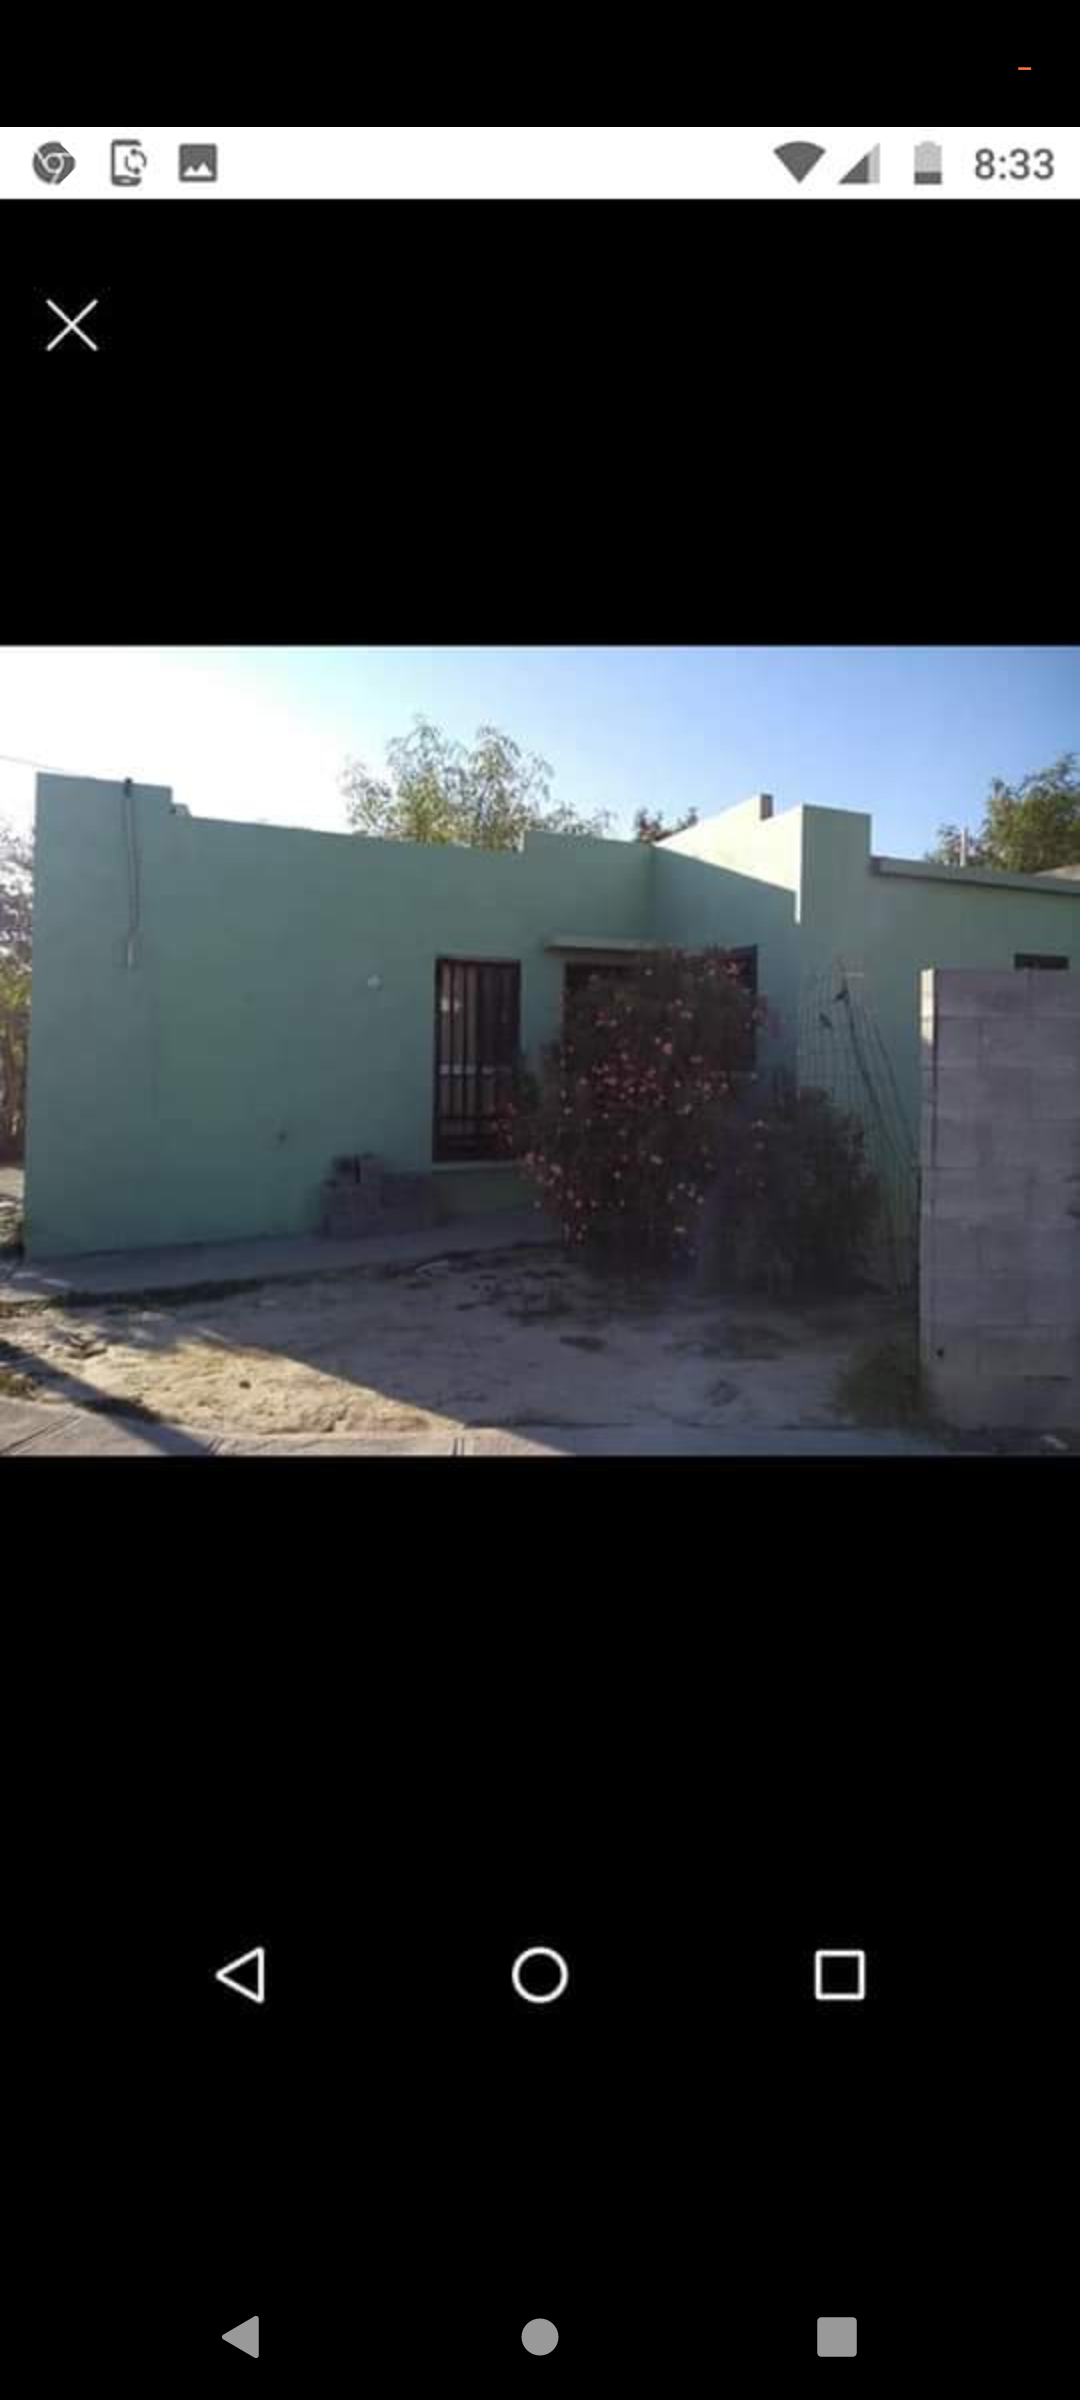 Busco intercambio de casa por alguna casa en Juárez o Guadalupe n.l